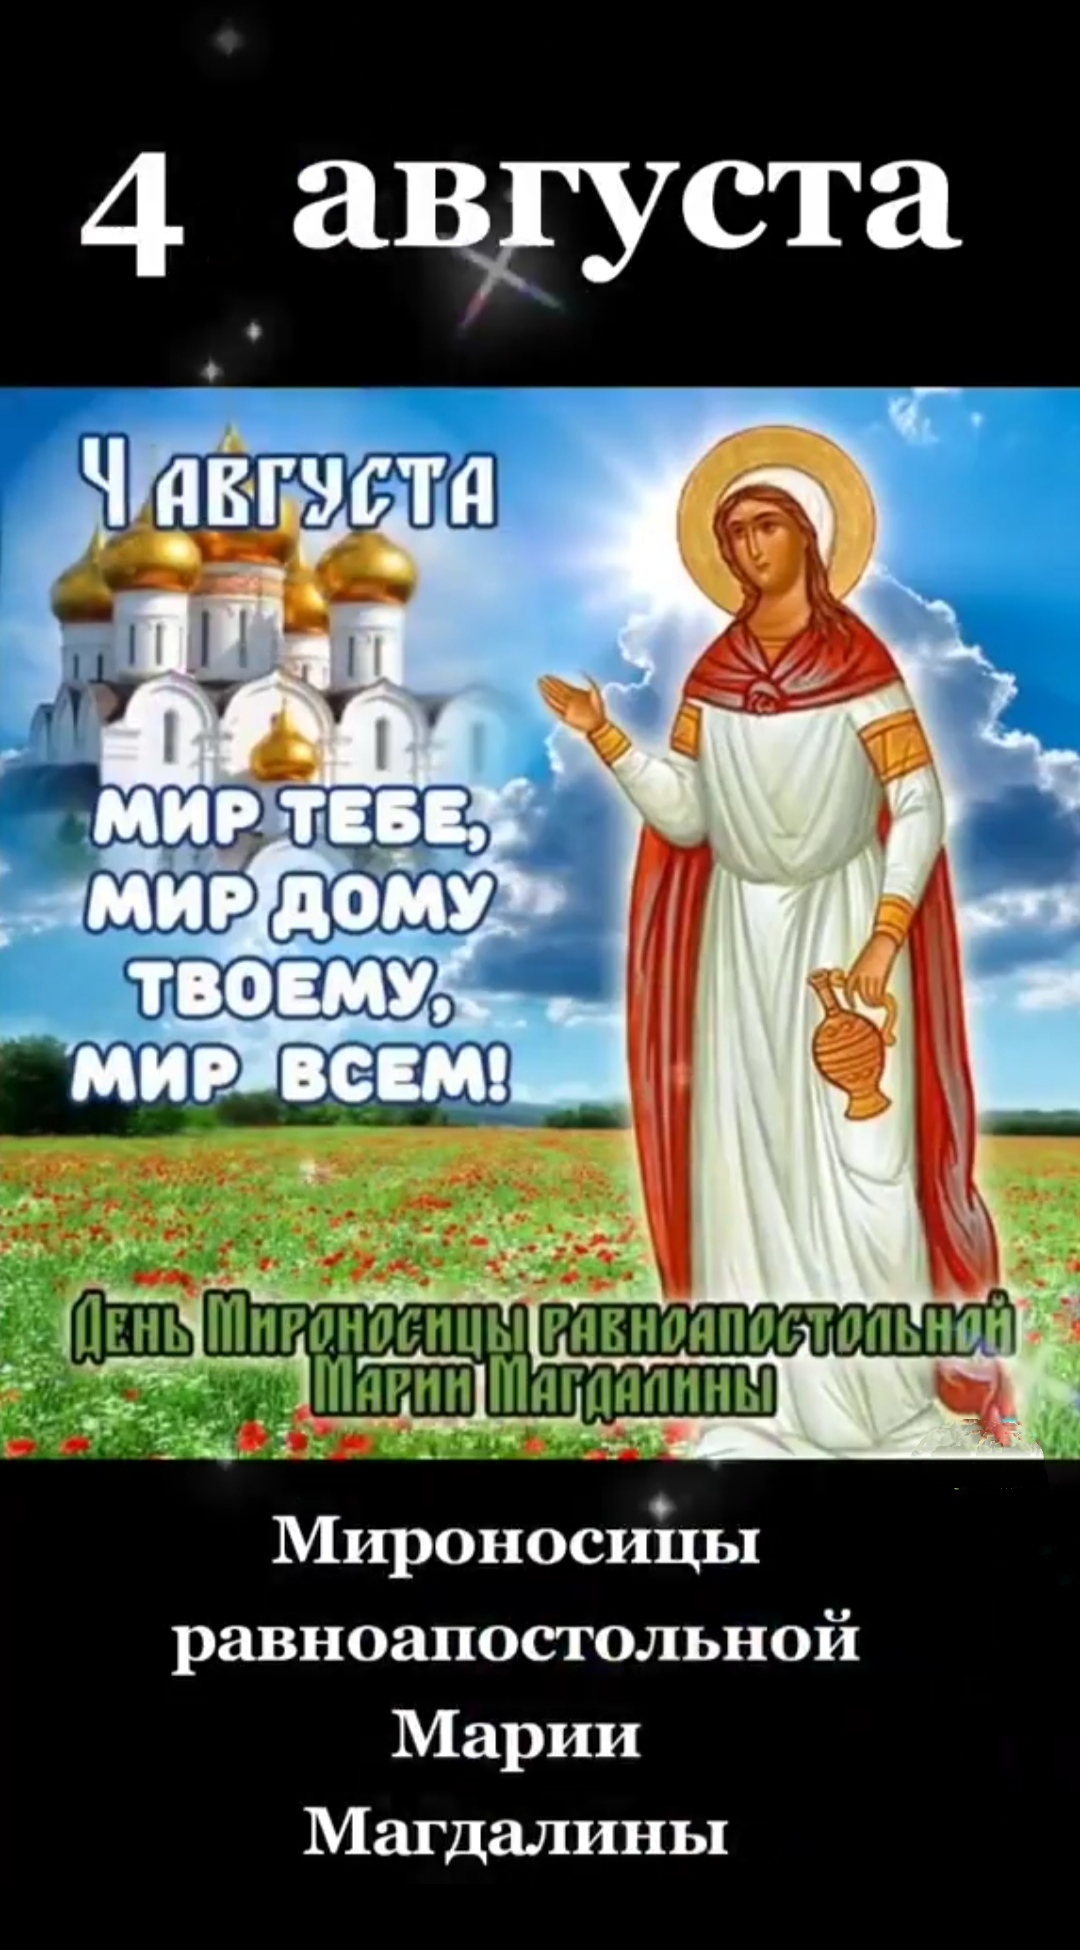 Красивые поздравительные открытки с Днем Мироносицы Равноапостольной Марии Магдалины - праздник 4 августа